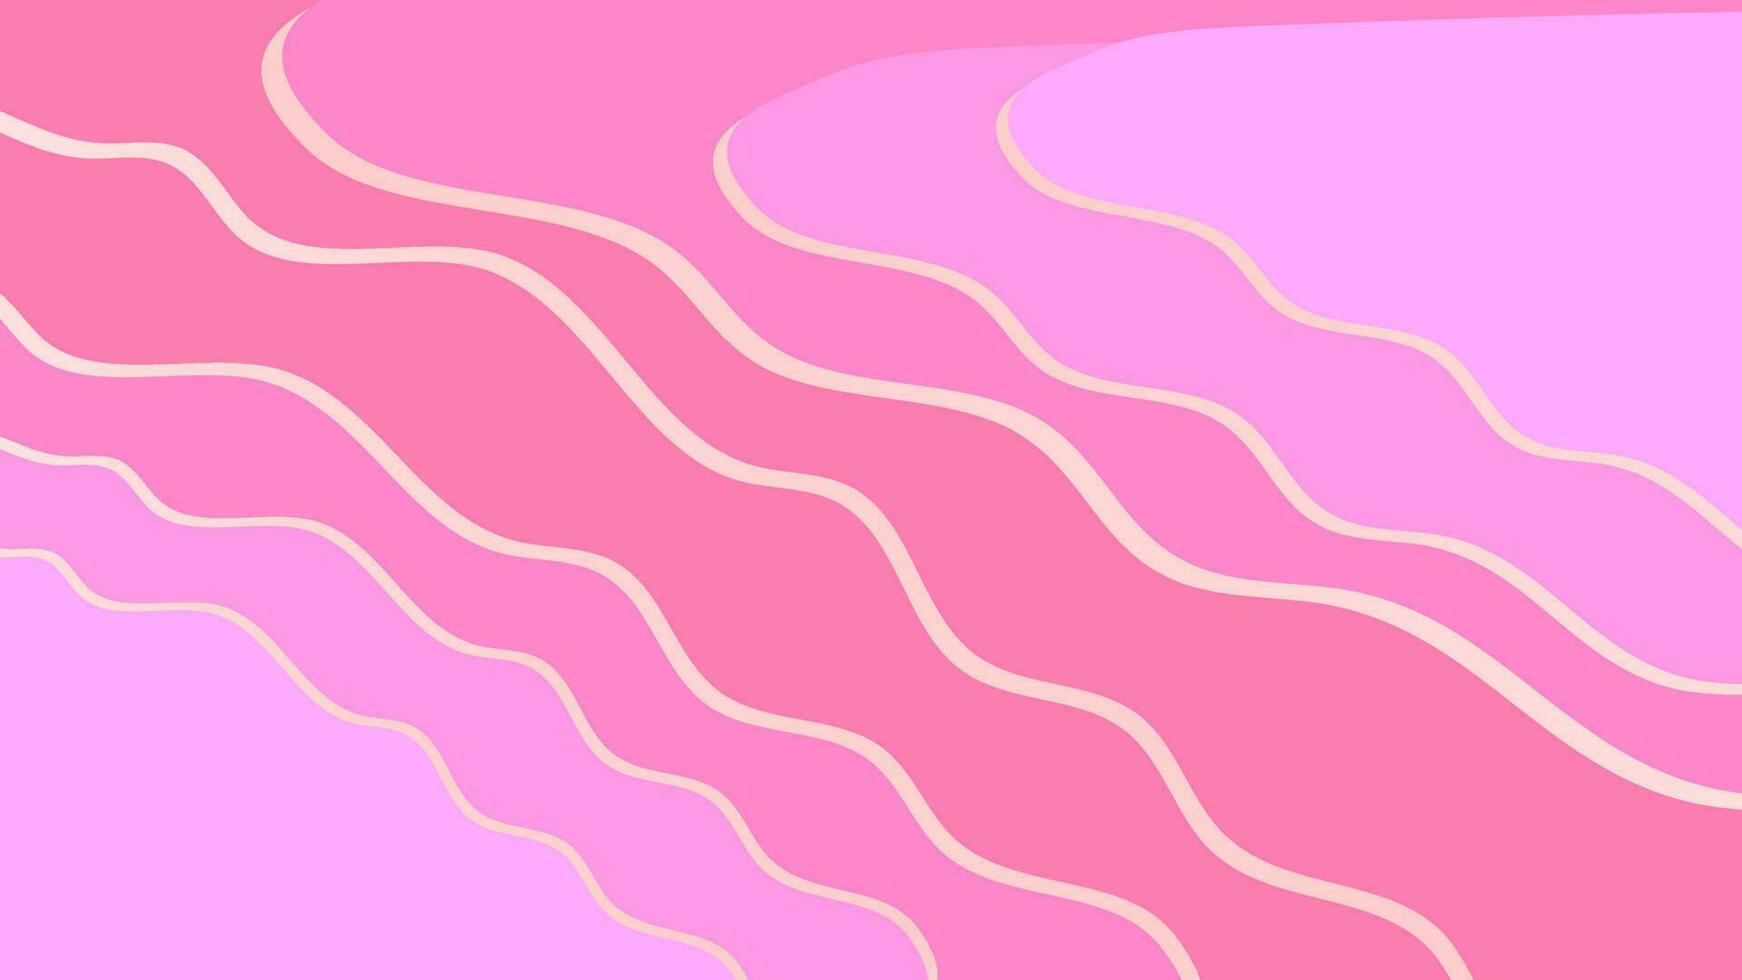 patrón de onda rosa de ilustración vectorial, ondas pastel de degradado suave, estilo de concha rosa abstracta vector